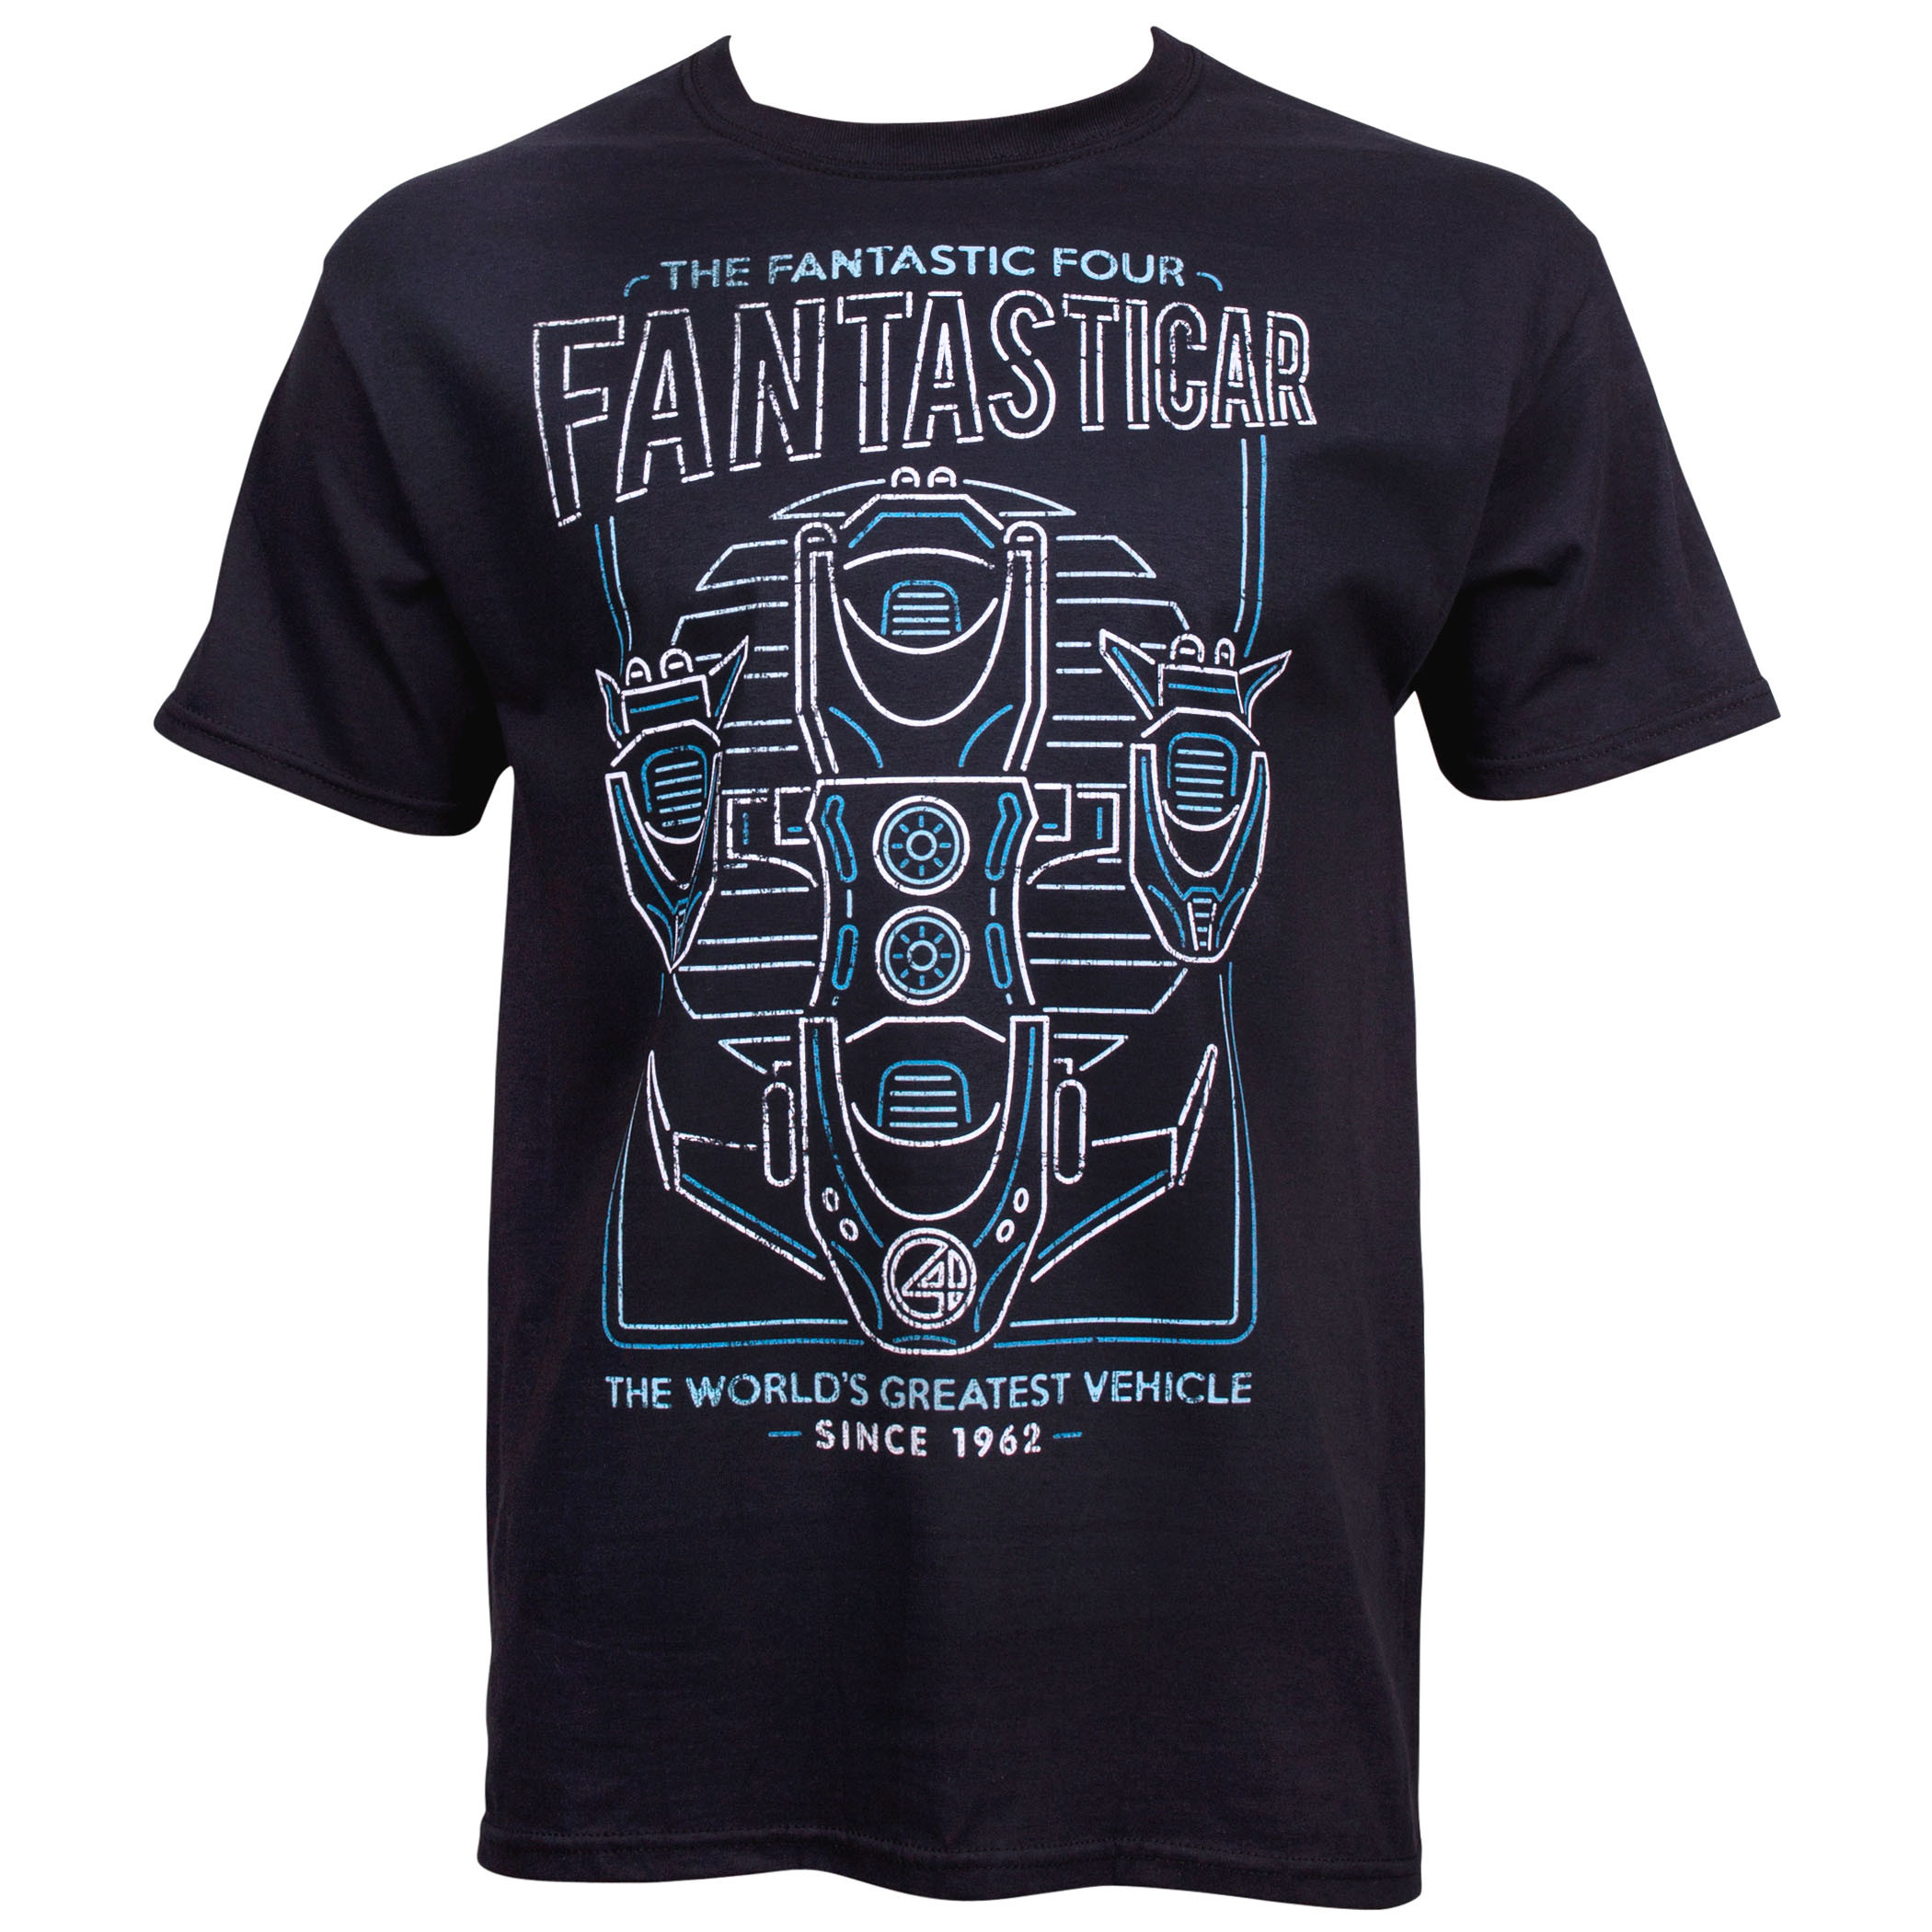 Fantastic Four Fantasticar T-Shirt